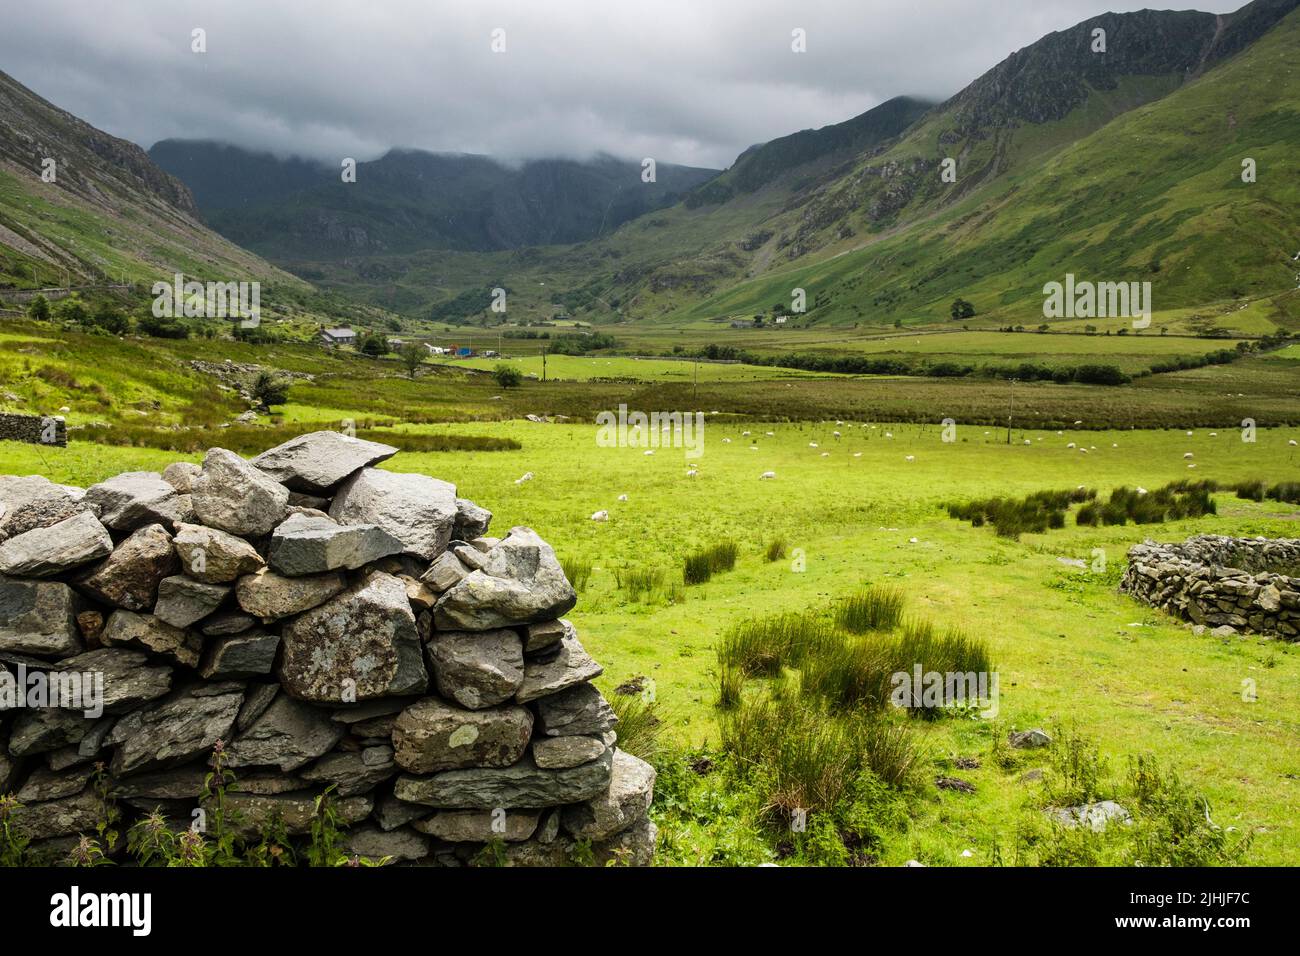 Trockensteinmauer und Schaffelder im Nant Ffrancon Tal mit Blick auf die Glyderau Berge im Snowdonia Nationalpark. Bethesda, Gwynedd, Wales, Großbritannien Stockfoto